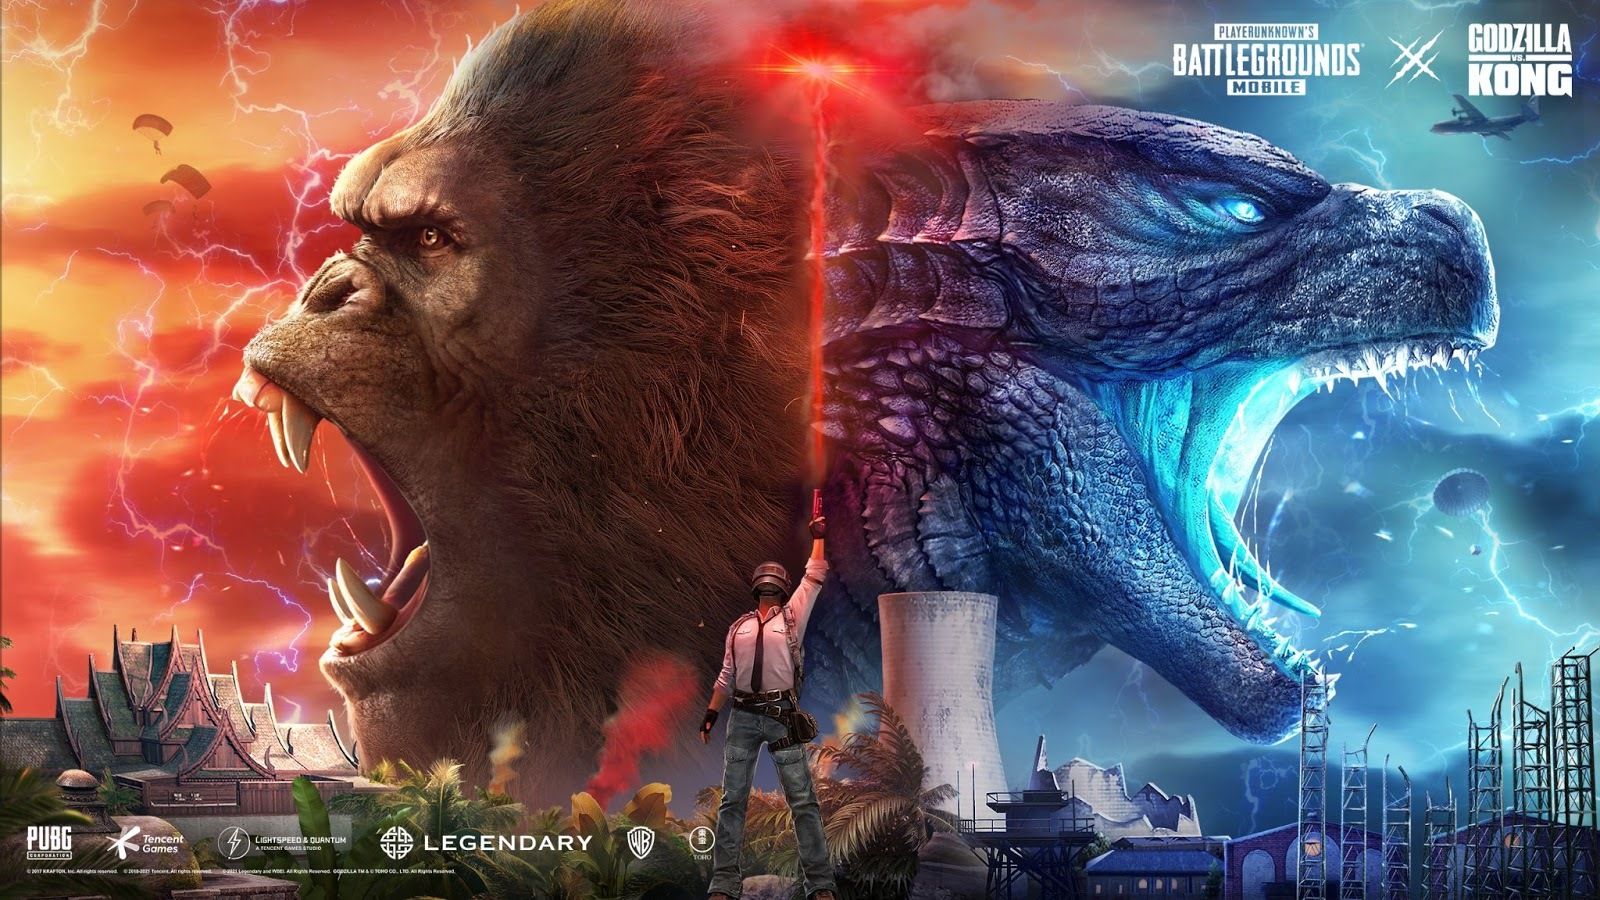 PUBG Godzilla Vs Kong Wallpapers - Wallpaper Cave